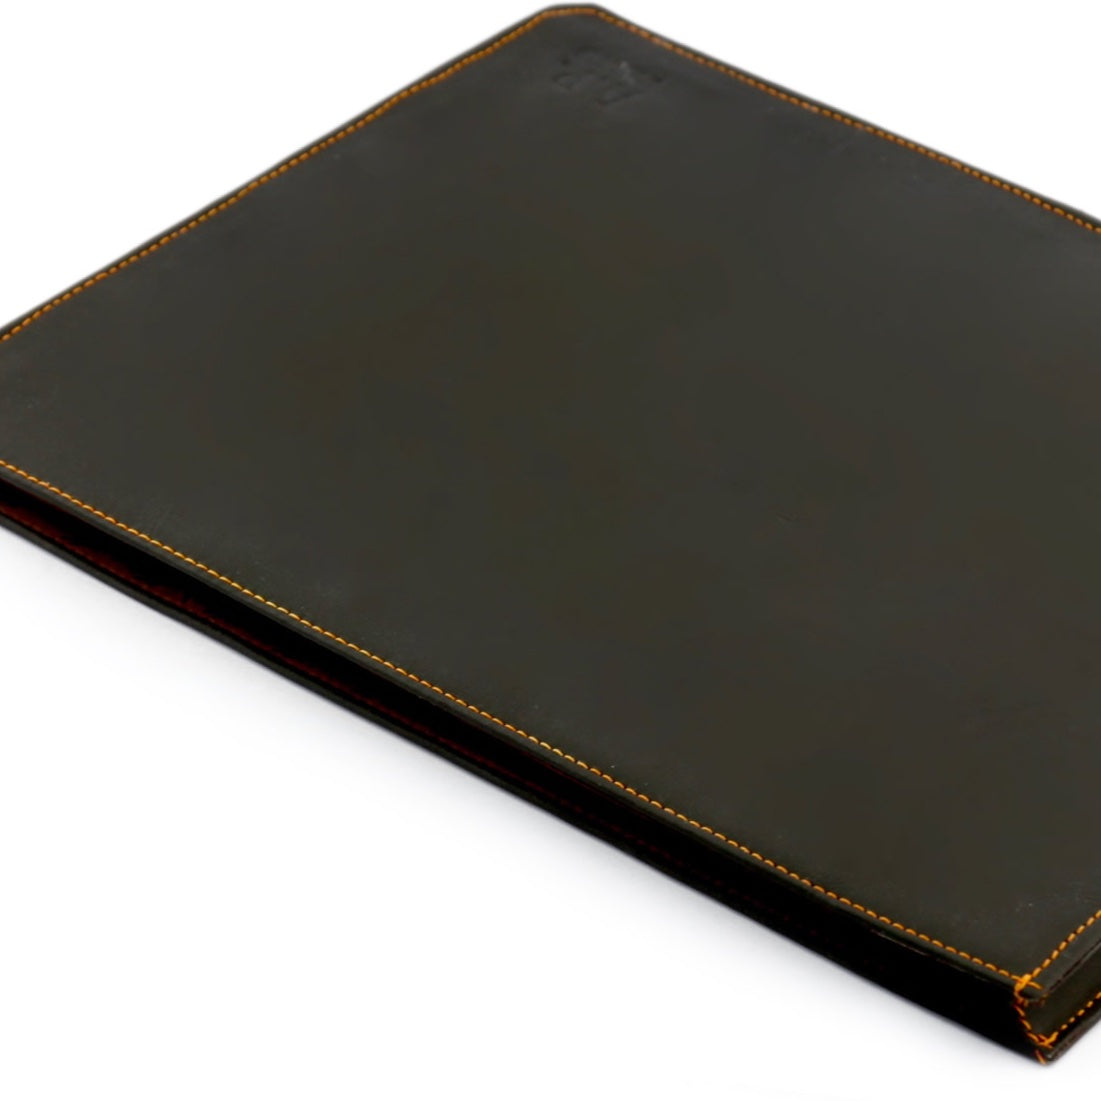 Case für iPad Pro 12.9 aus Rindsleder braun